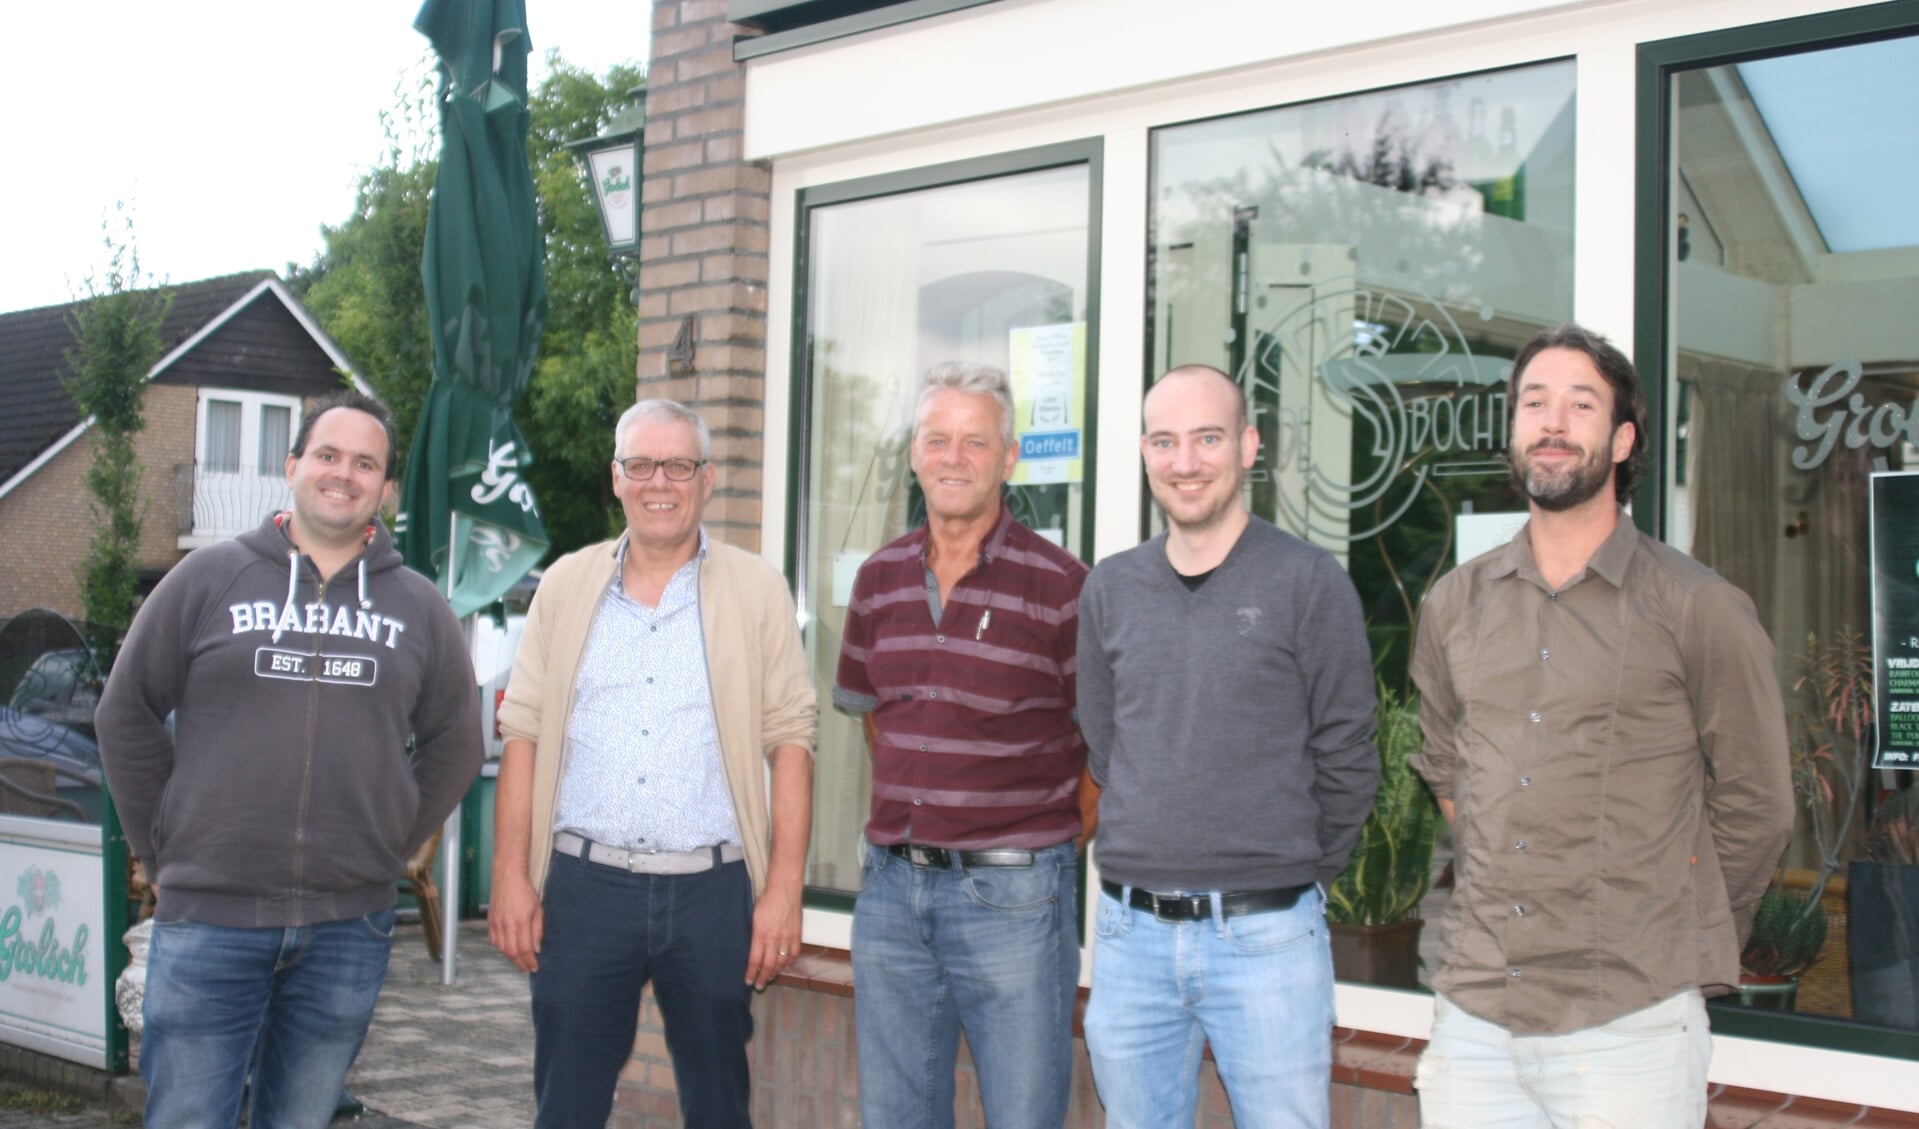 De teammanagers (v.l.n.r.): Joost Hendriks, Harrie Cuppen, René Broekmans, Jan Heijnen en Jacco Arts.